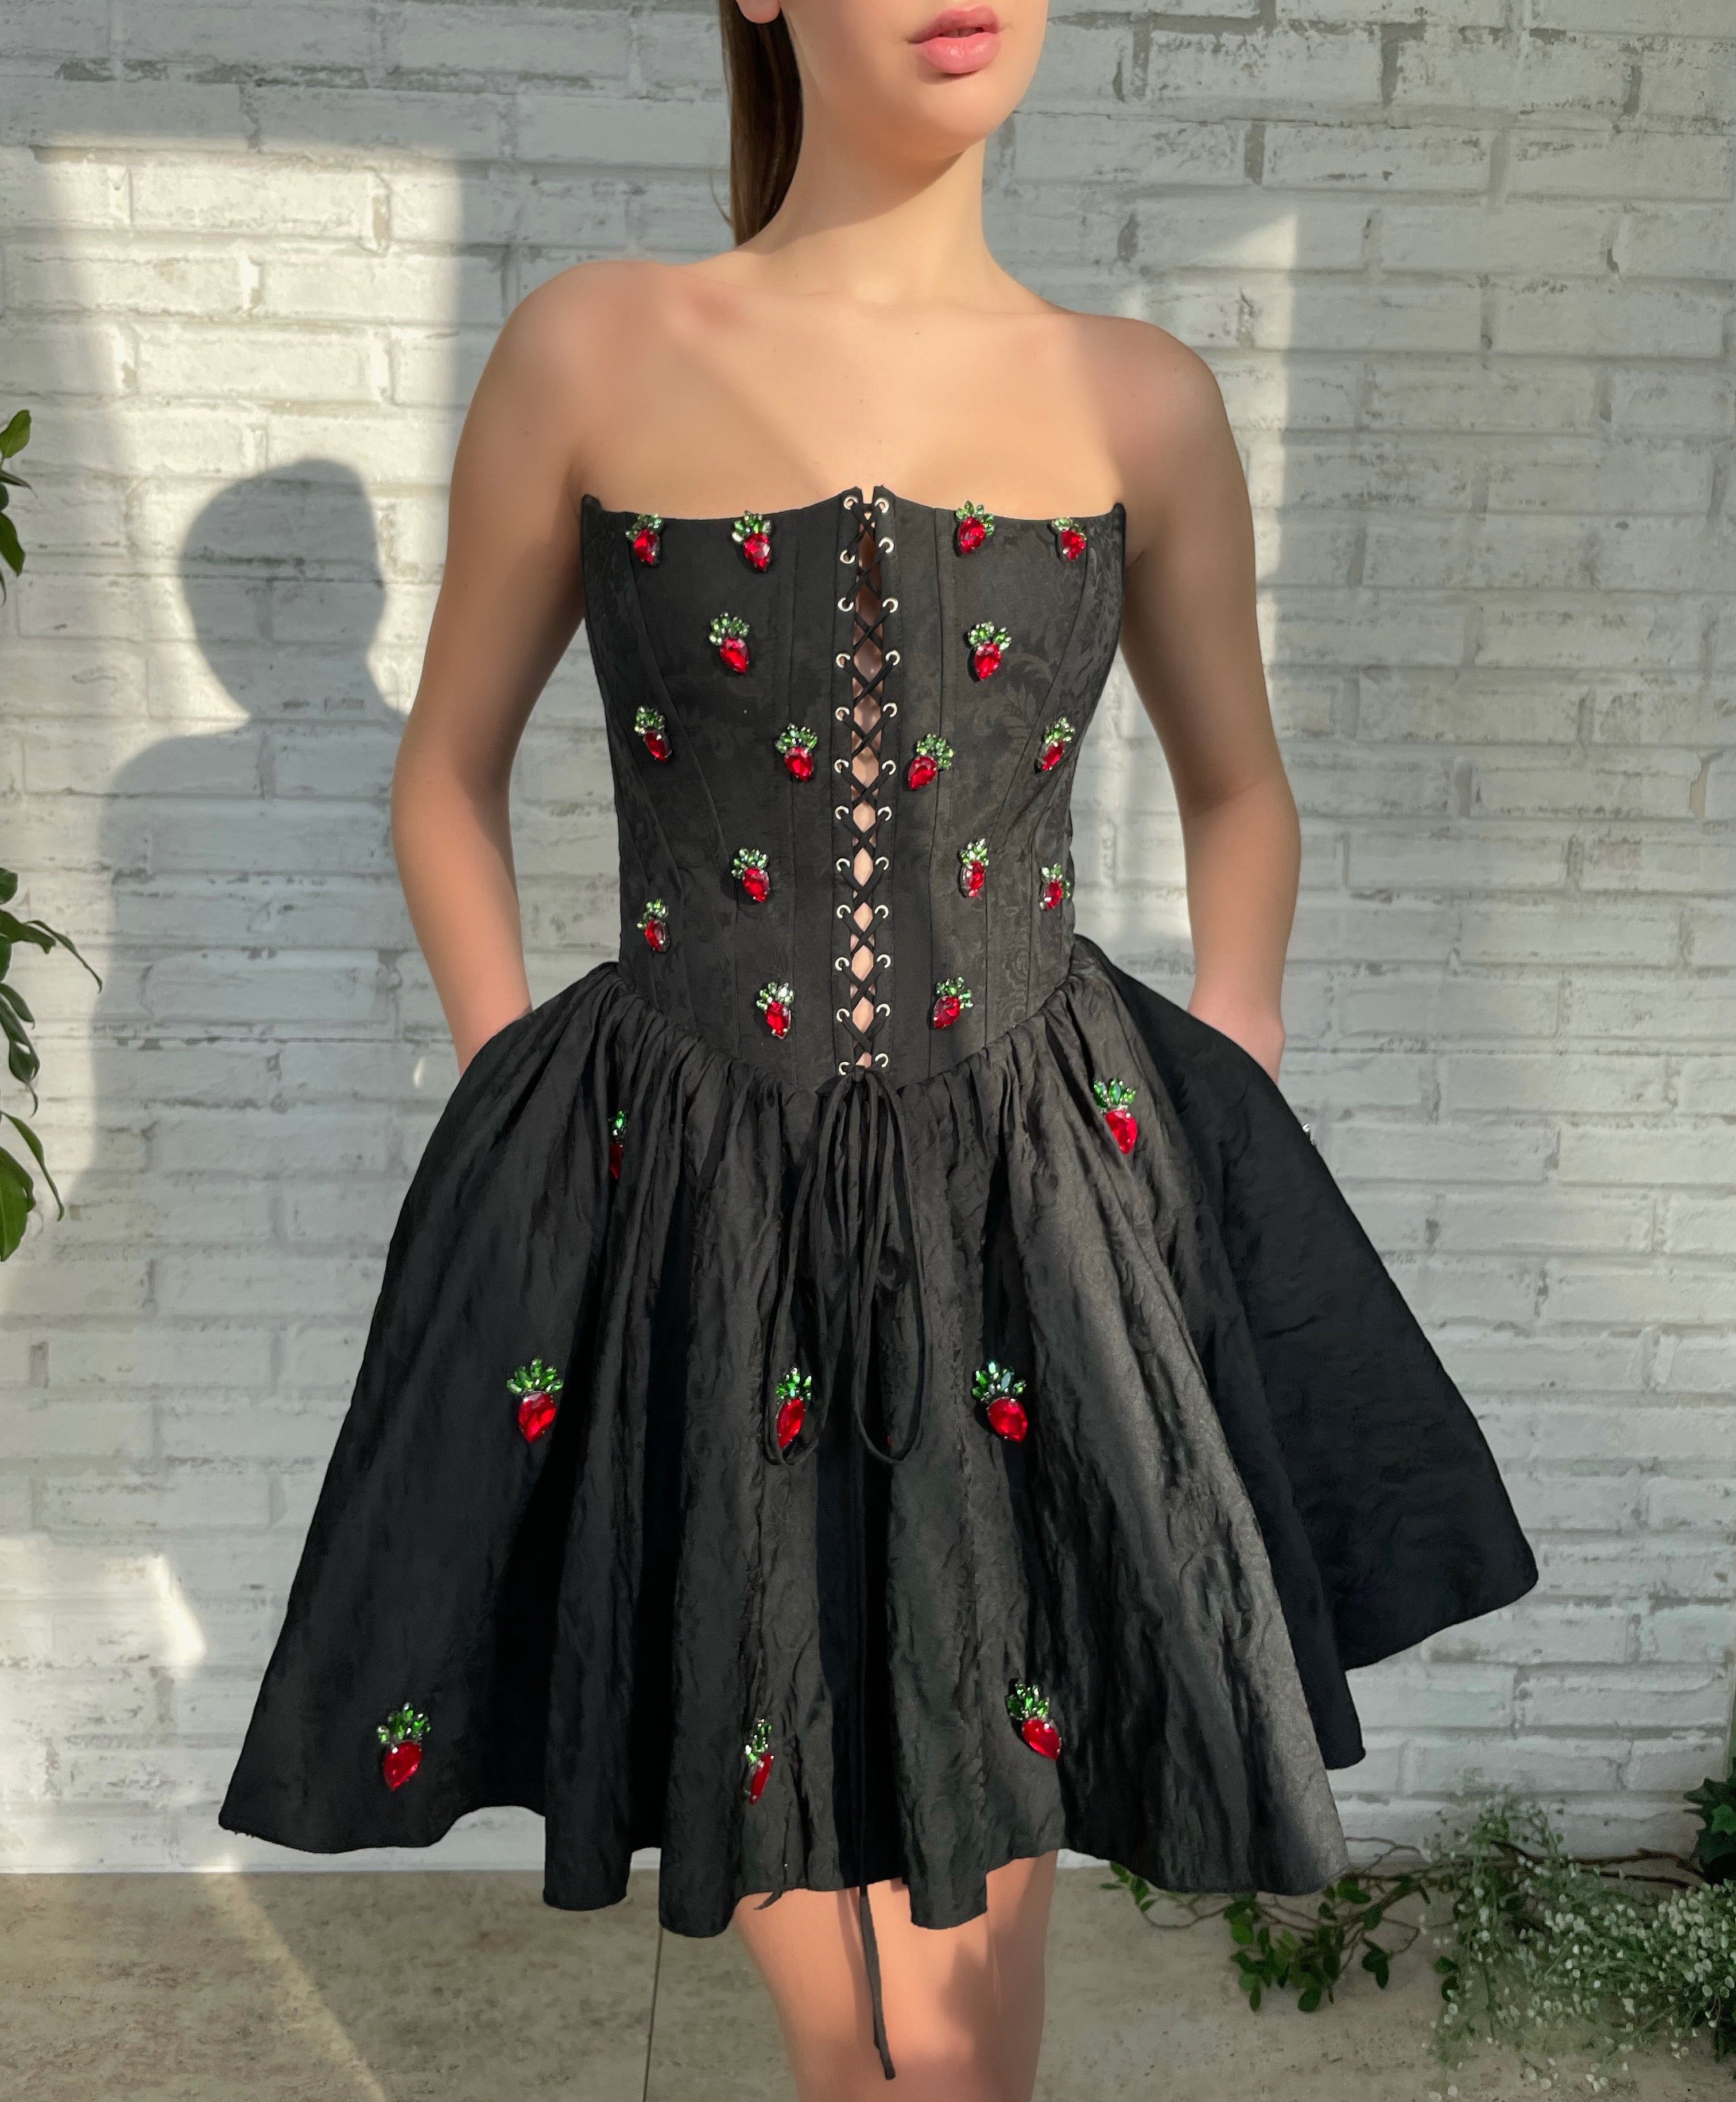 black corset mini dress